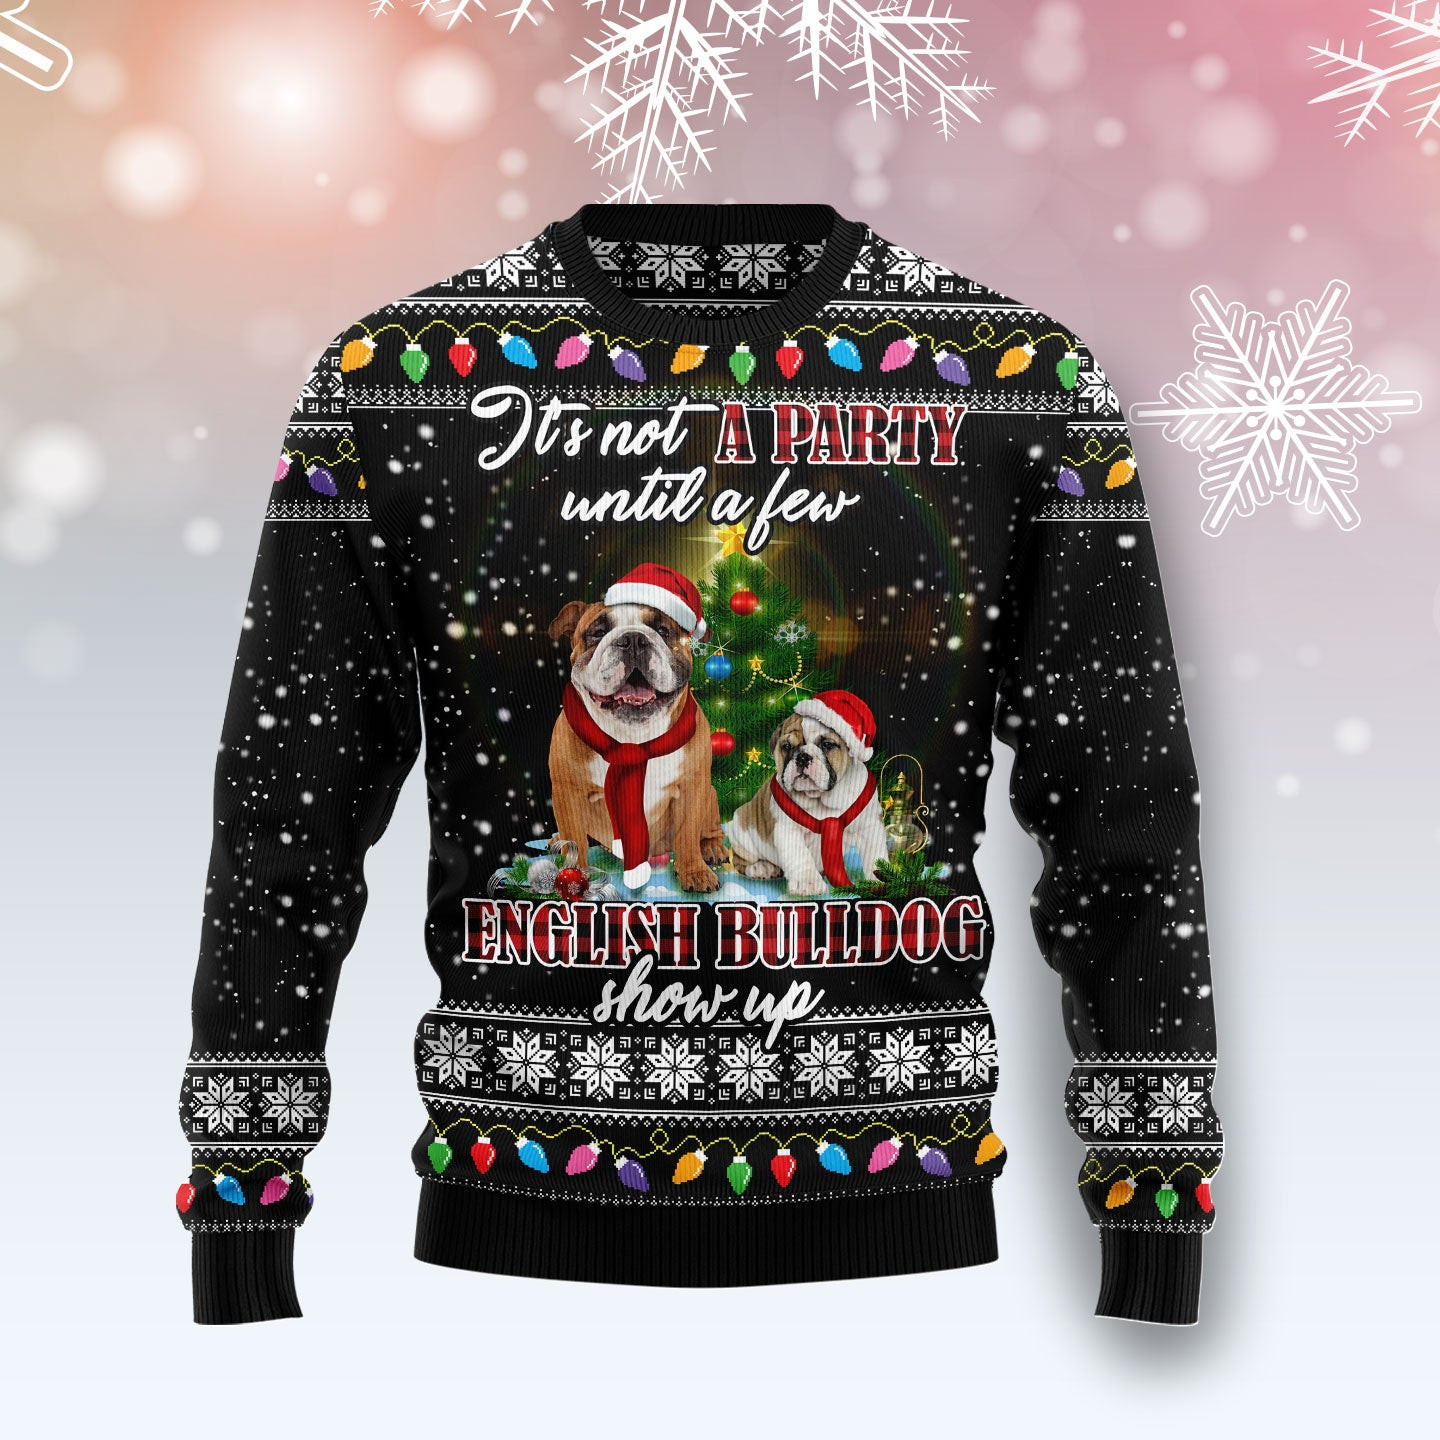 English Bulldog Show Up Ugly Christmas Sweater